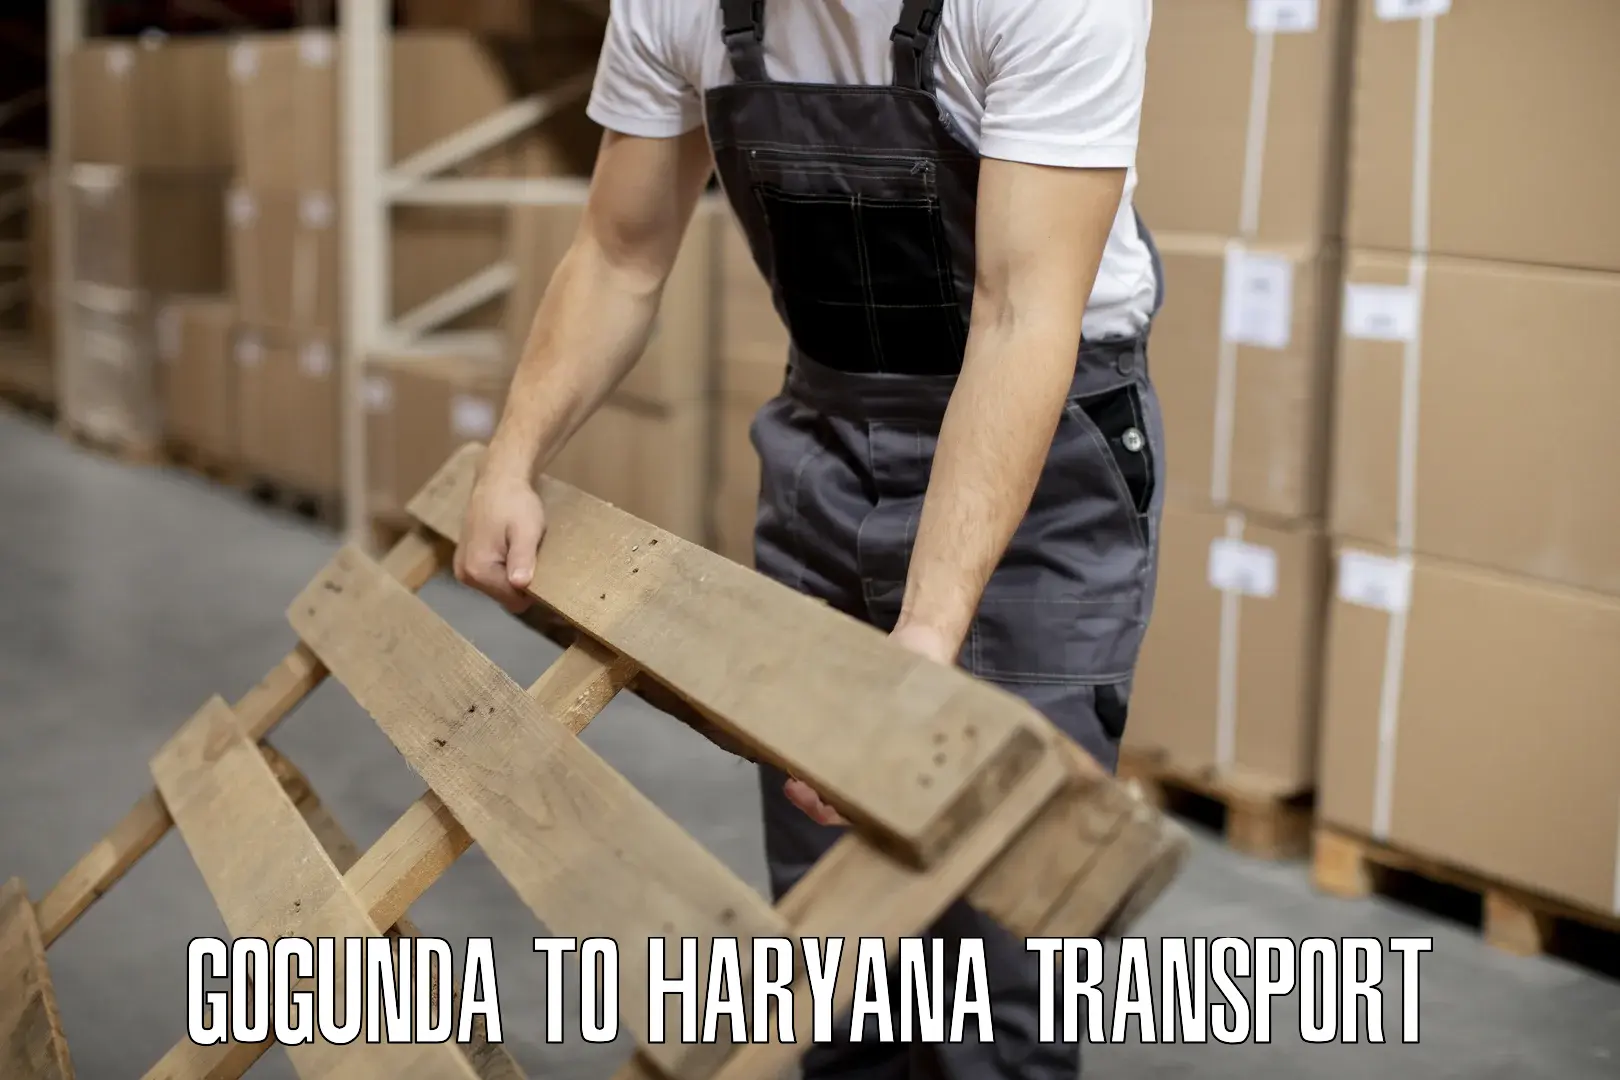 All India transport service Gogunda to Haryana